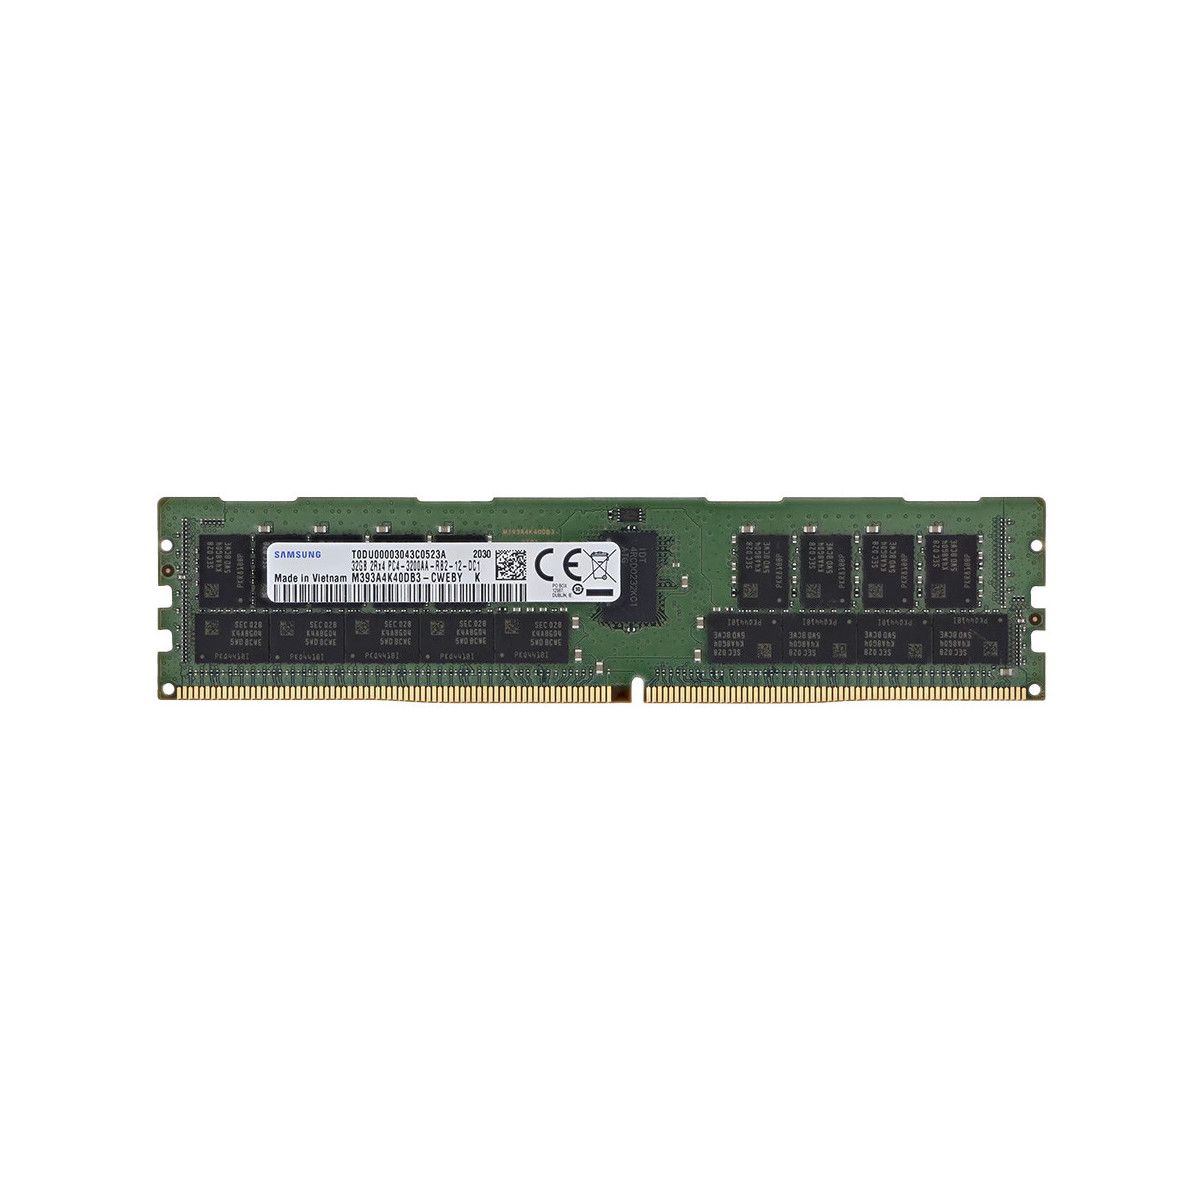 SNP75X1VC/32G-MS - Memstar 1x 32GB DDR4-3200 RDIMM PC4-25600R - Mem-Star Kompatibel OEM Speichermedien 1 - Memstar 